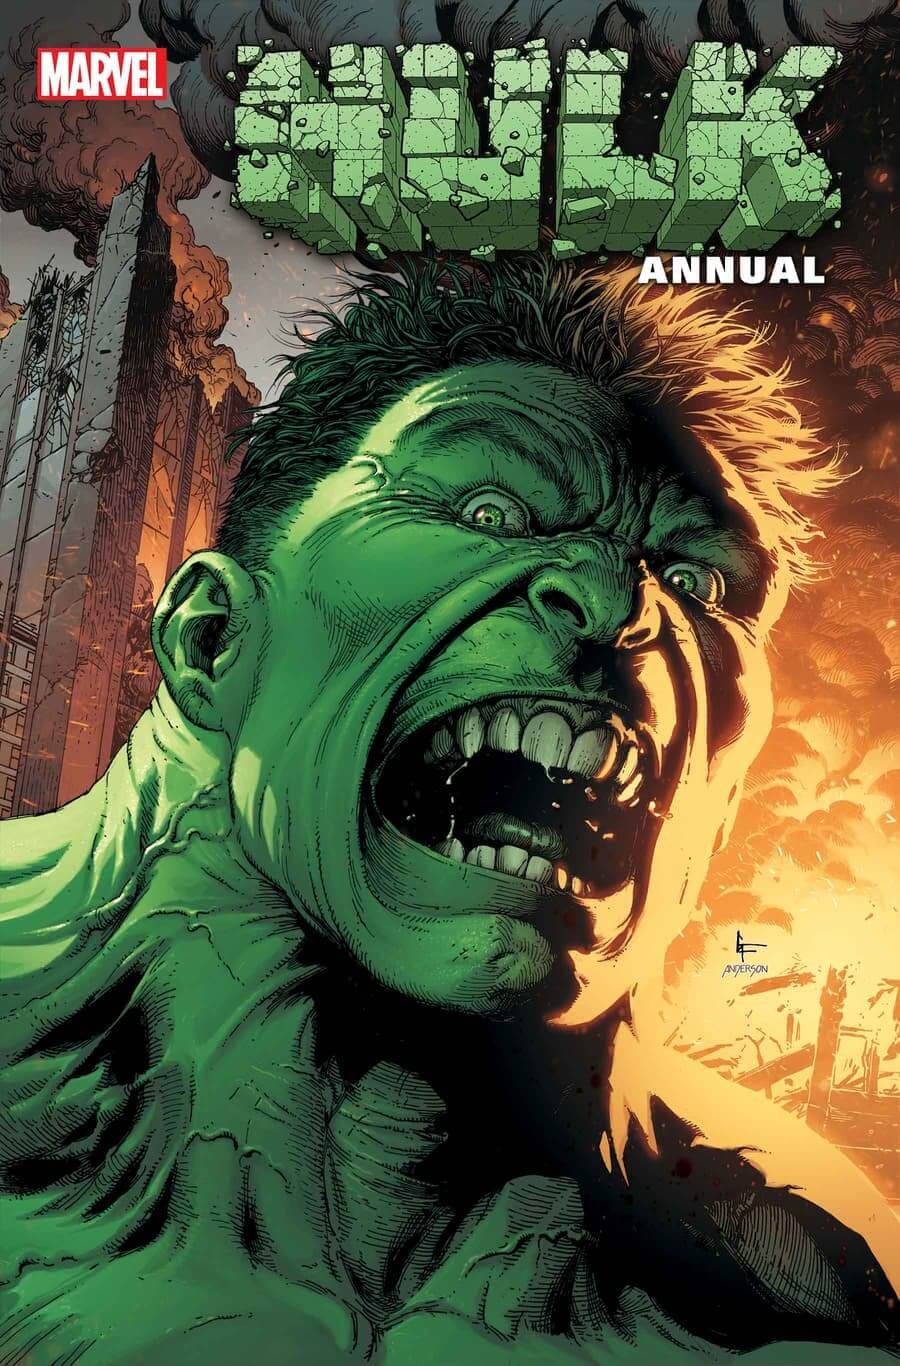 Couverture de Hulk Annual 1, par Gary Frank